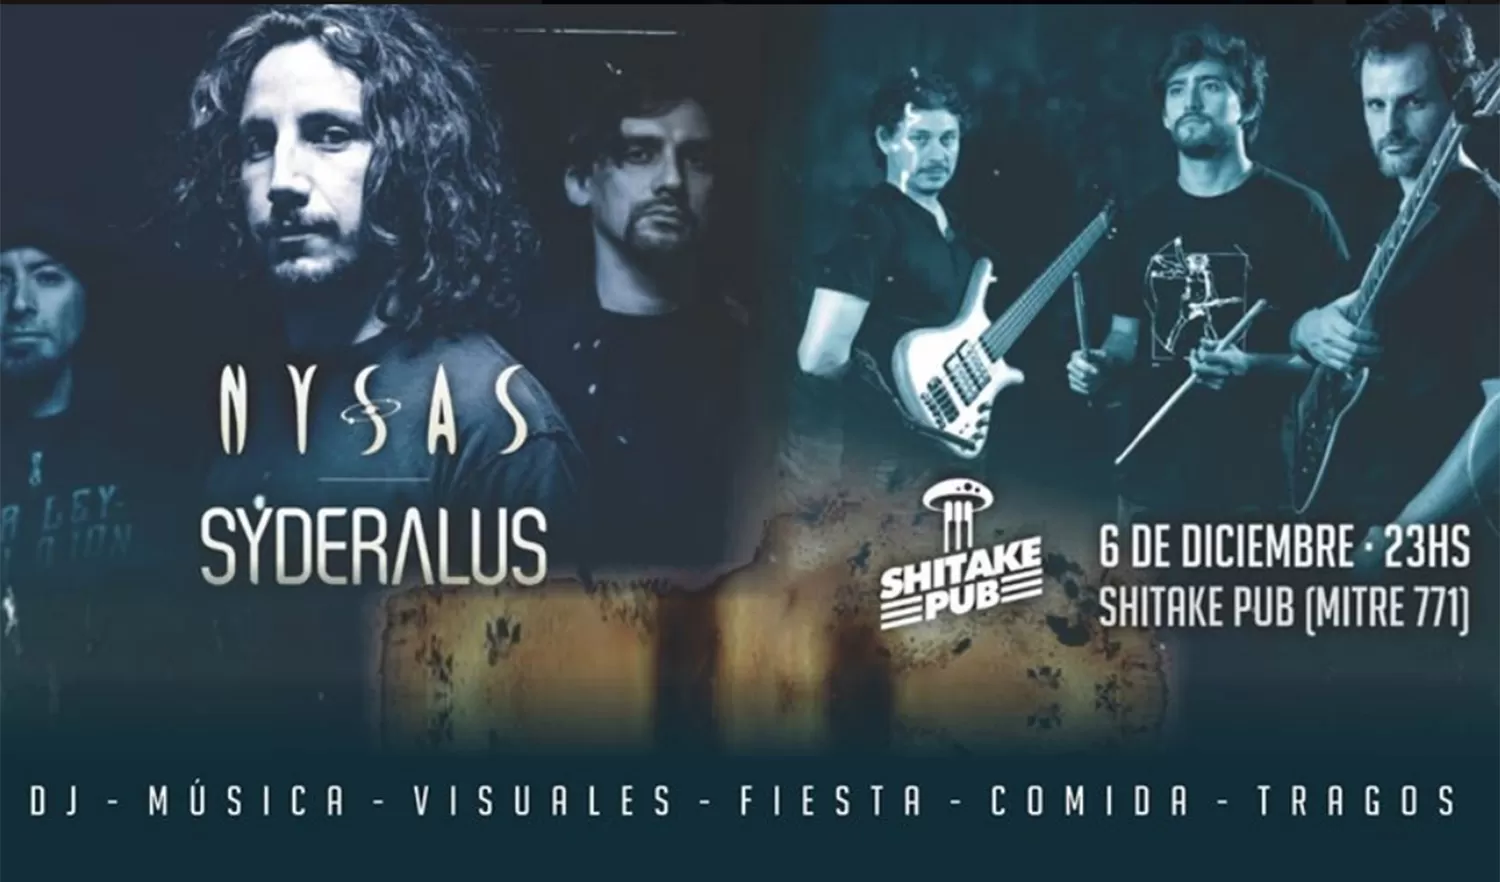 Dos bandas de rock: Syderalus y Nysas harán temas de sus discos